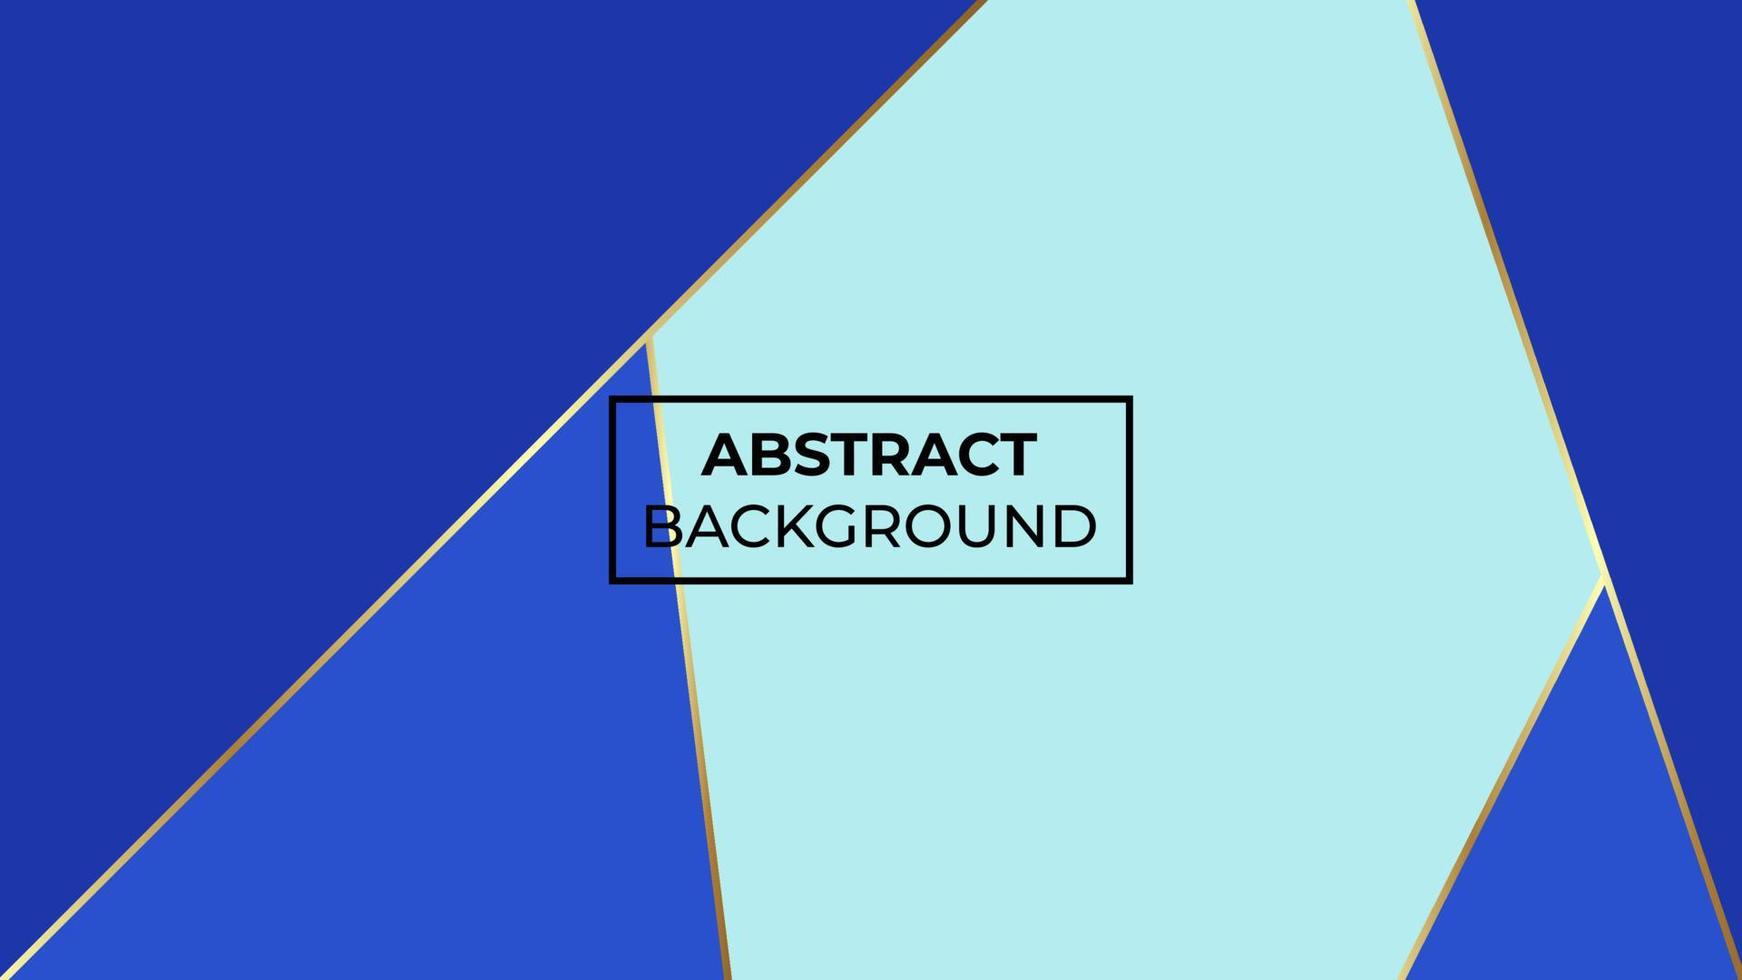 abstracte achtergrond met twee kleuren hemelsblauw en donkerblauw die elkaar overlappen, gemakkelijk te bewerken vector